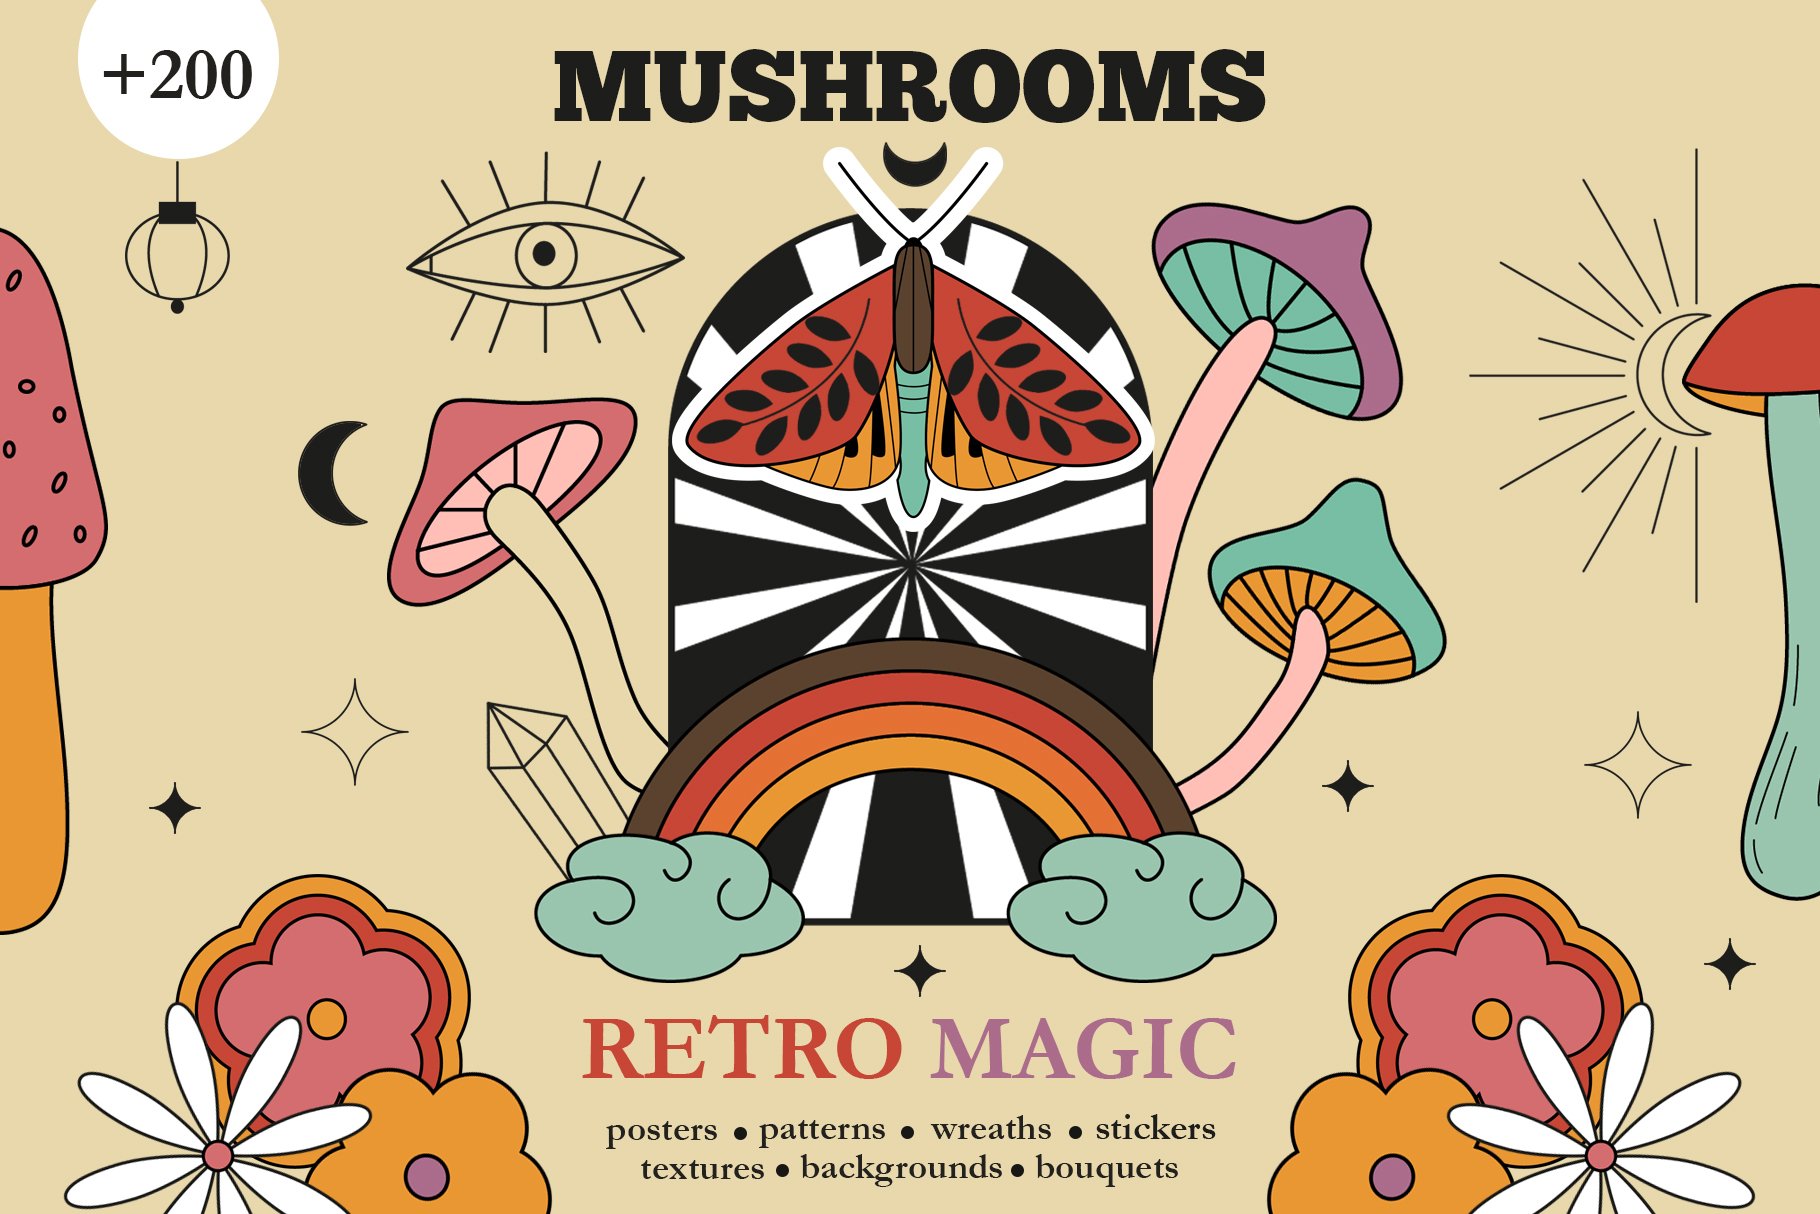 Retro Autumn - Magic Mushrooms cover image.